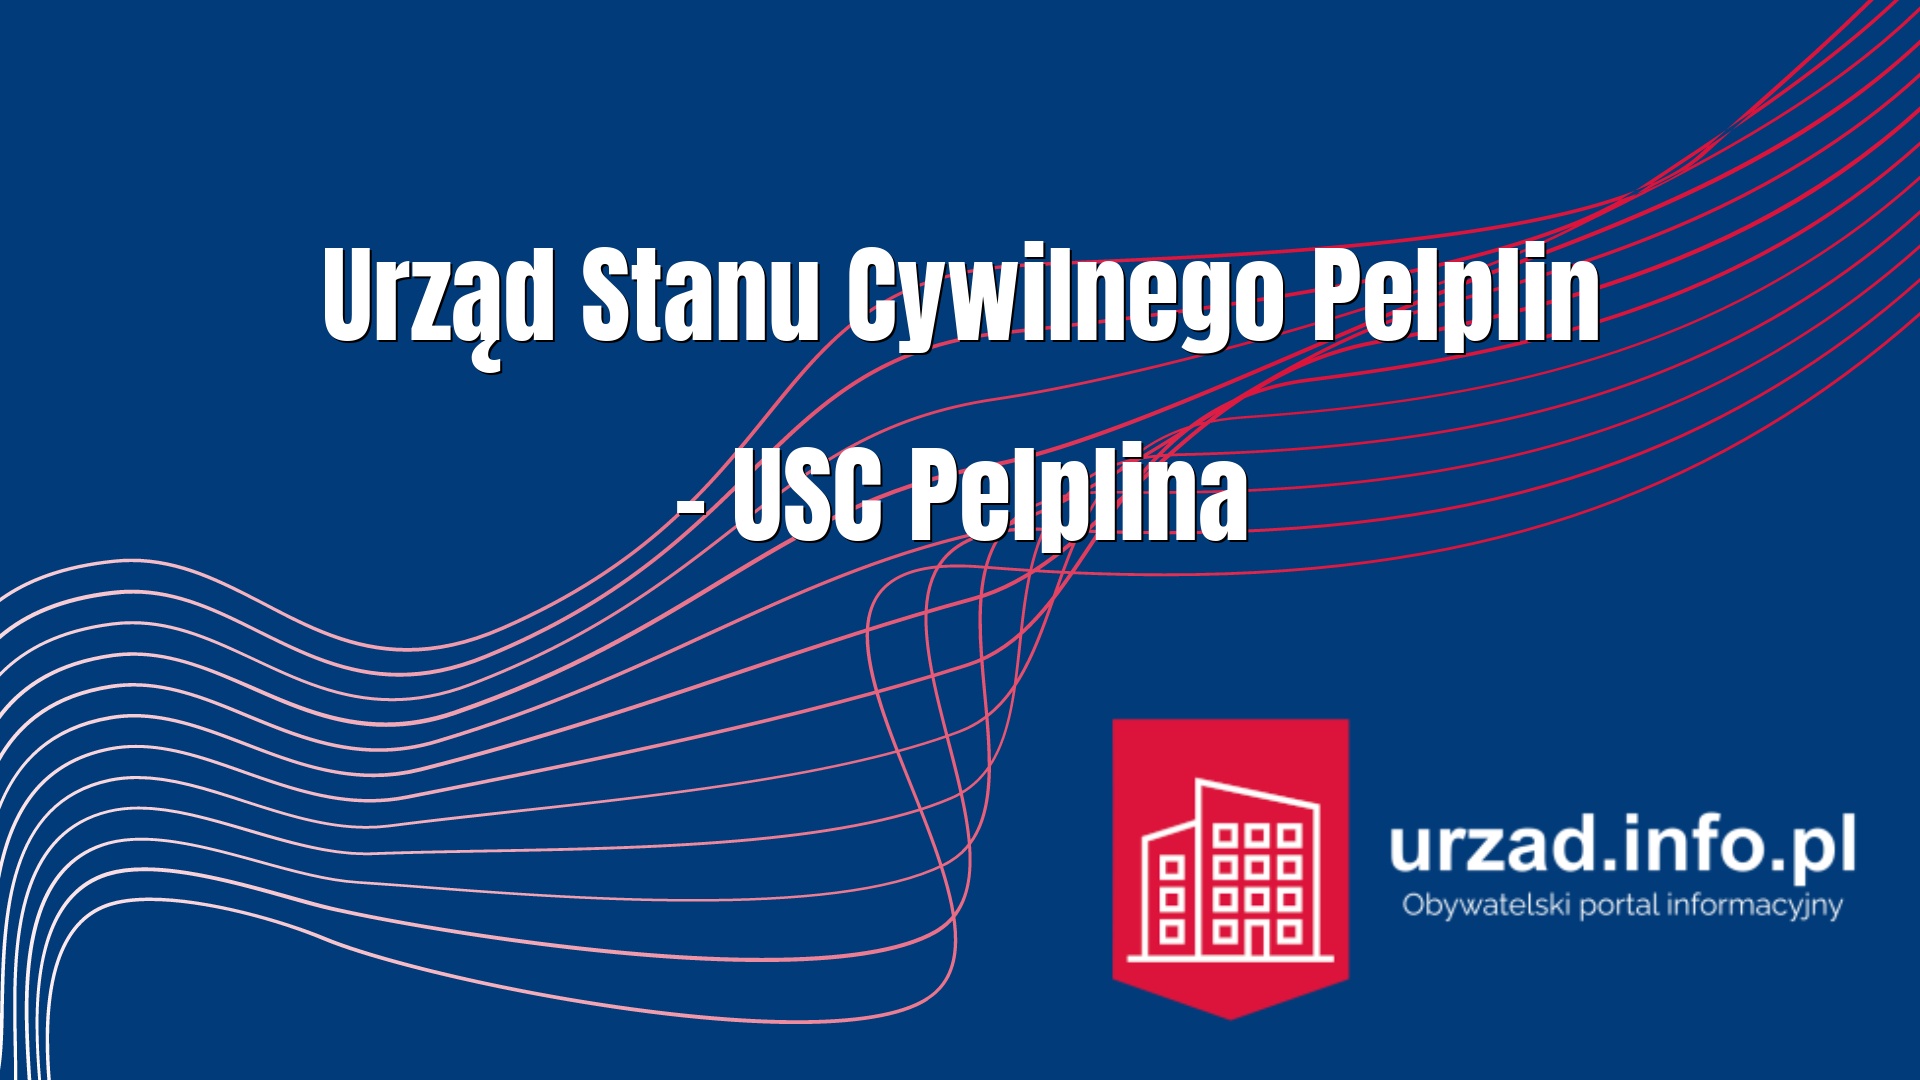 Urząd Stanu Cywilnego Pelplin – USC Pelplina